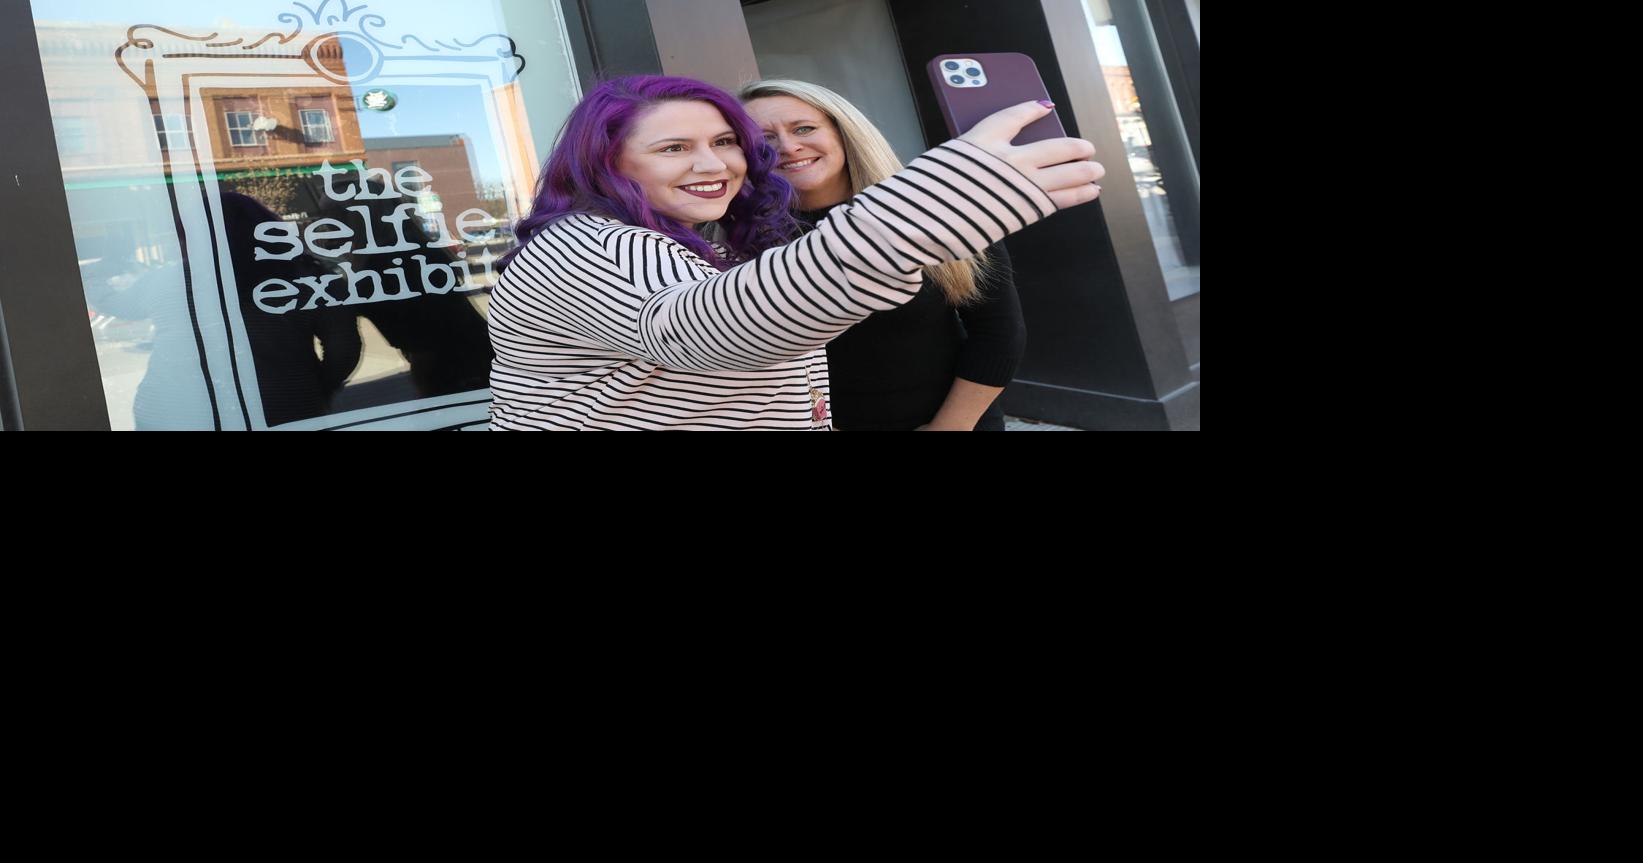 Love Your Selfie: Interactive studio to launch in downtown Cedar Falls